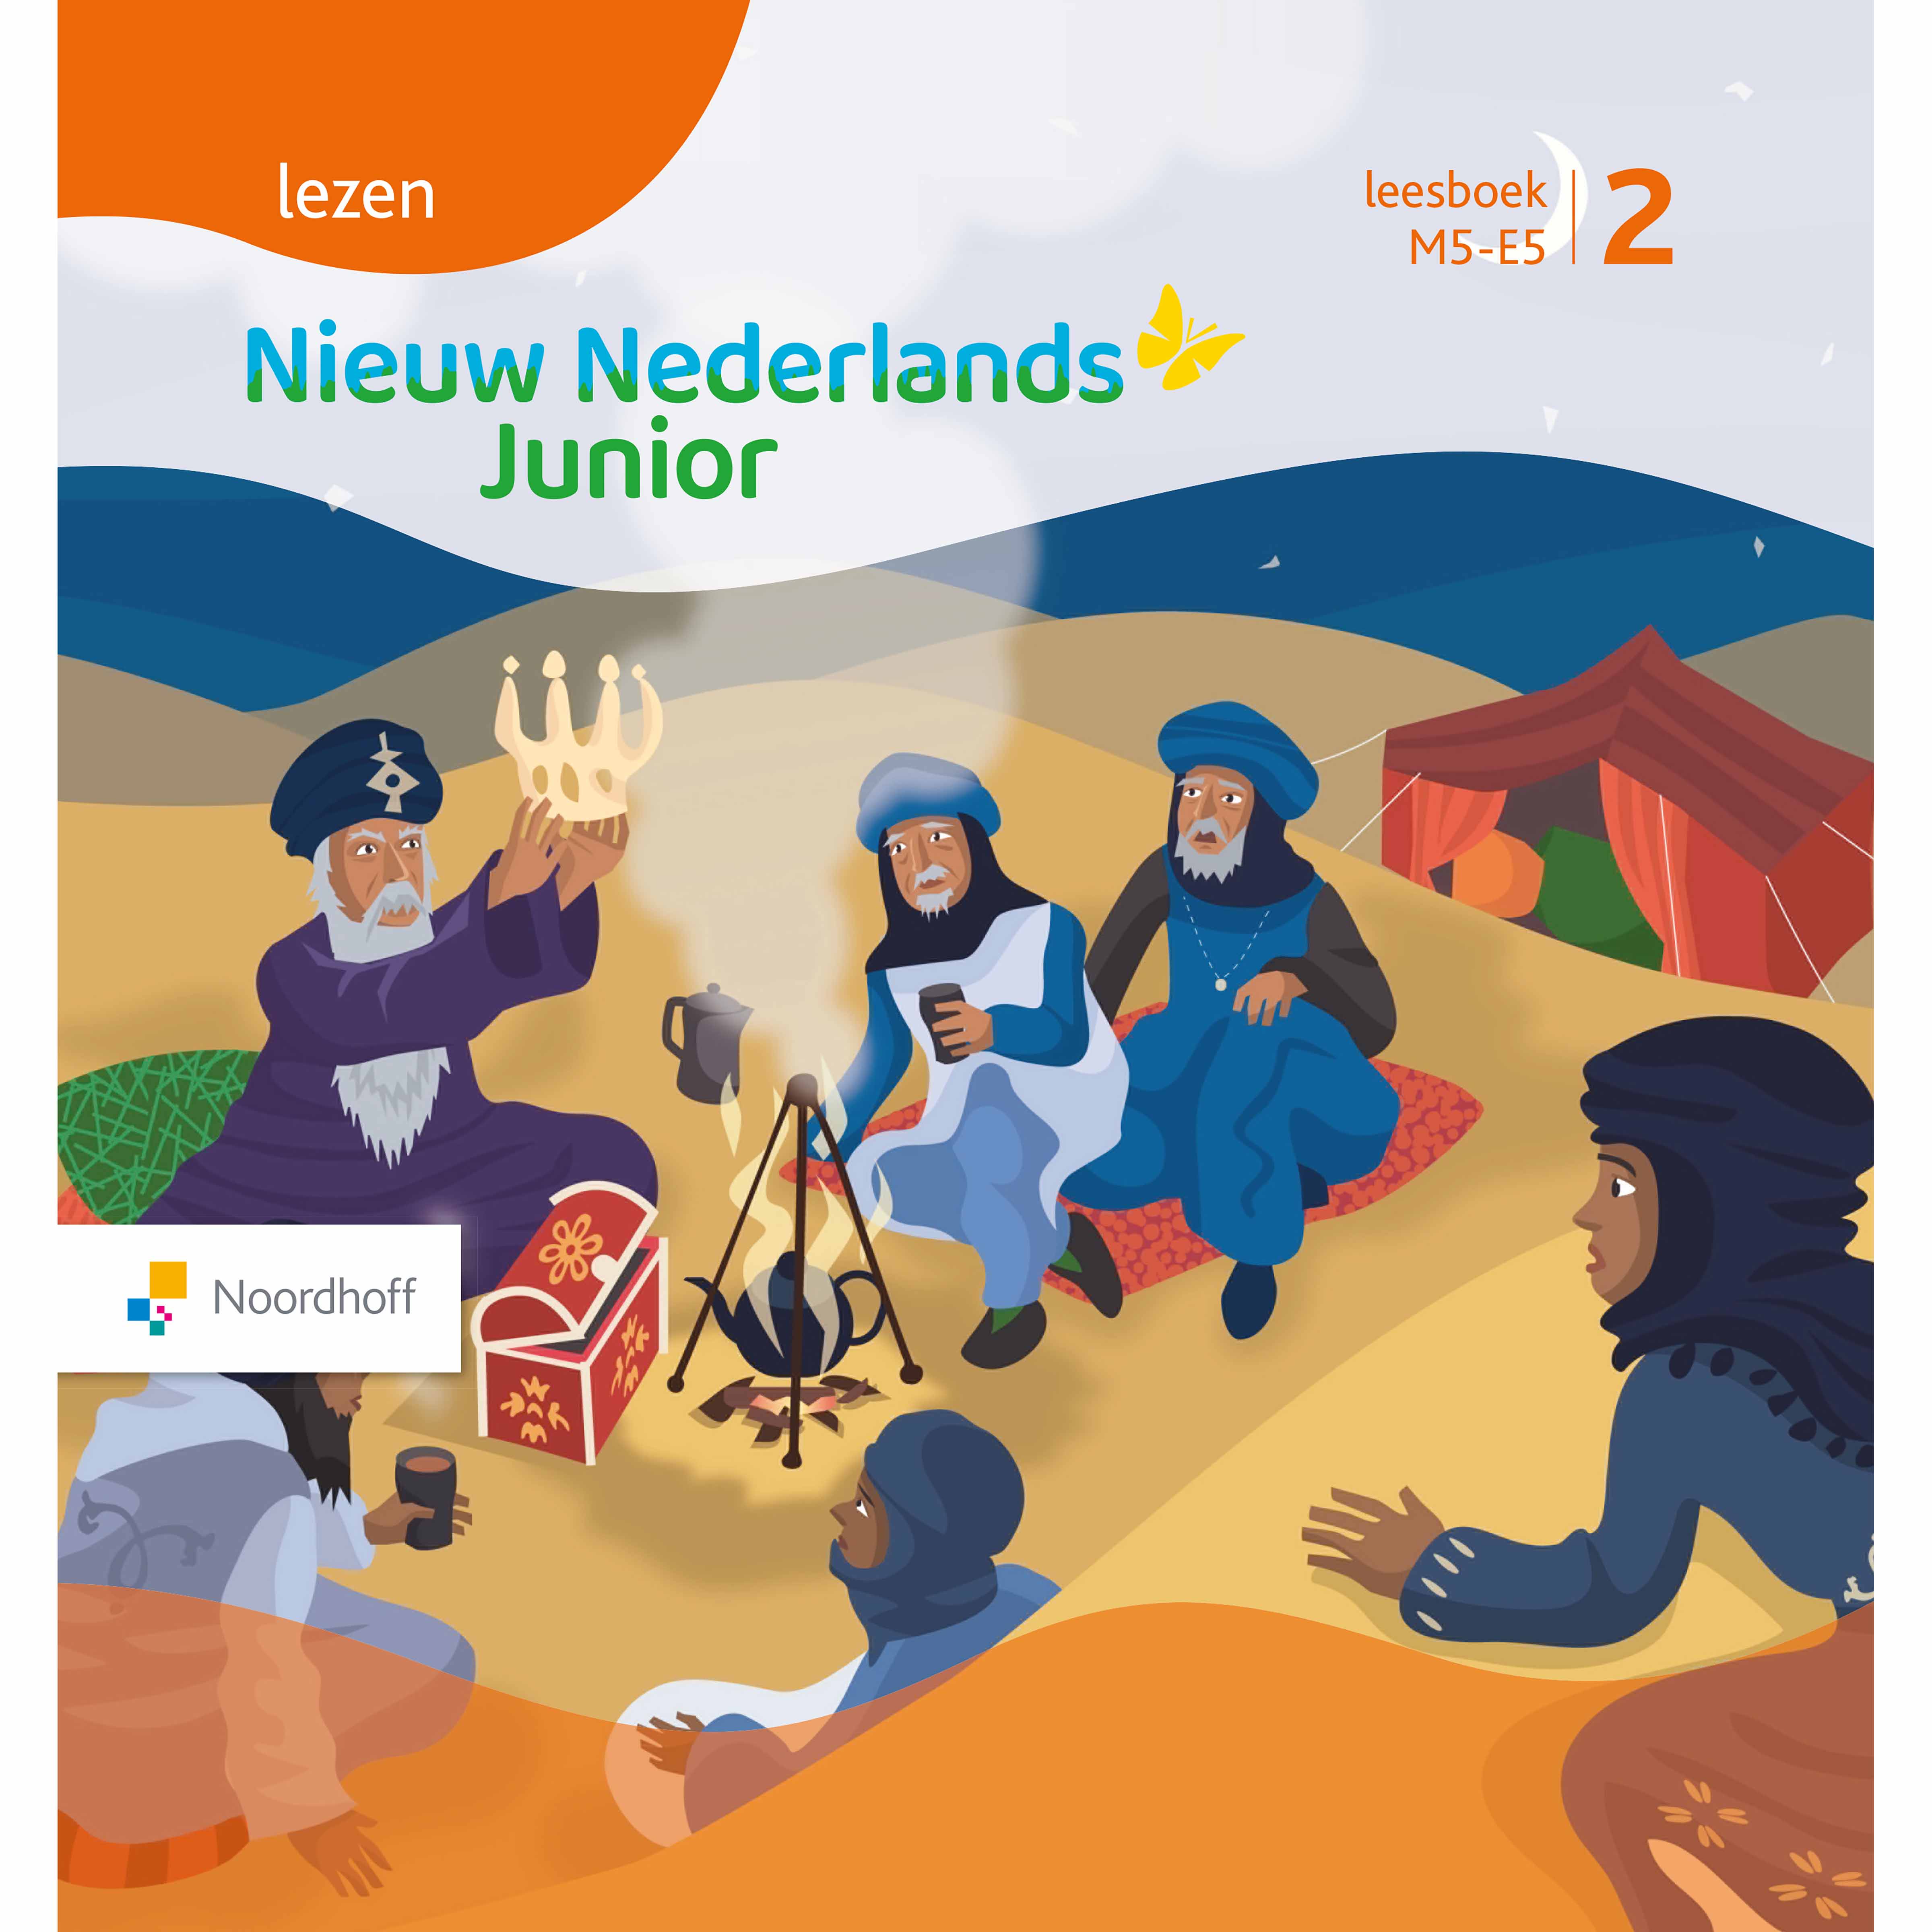 kolonie Parel Knuppel Leesboek M5-E5 deel 2 | Nieuw Nederlands Junior Lezen | Heutink.nl